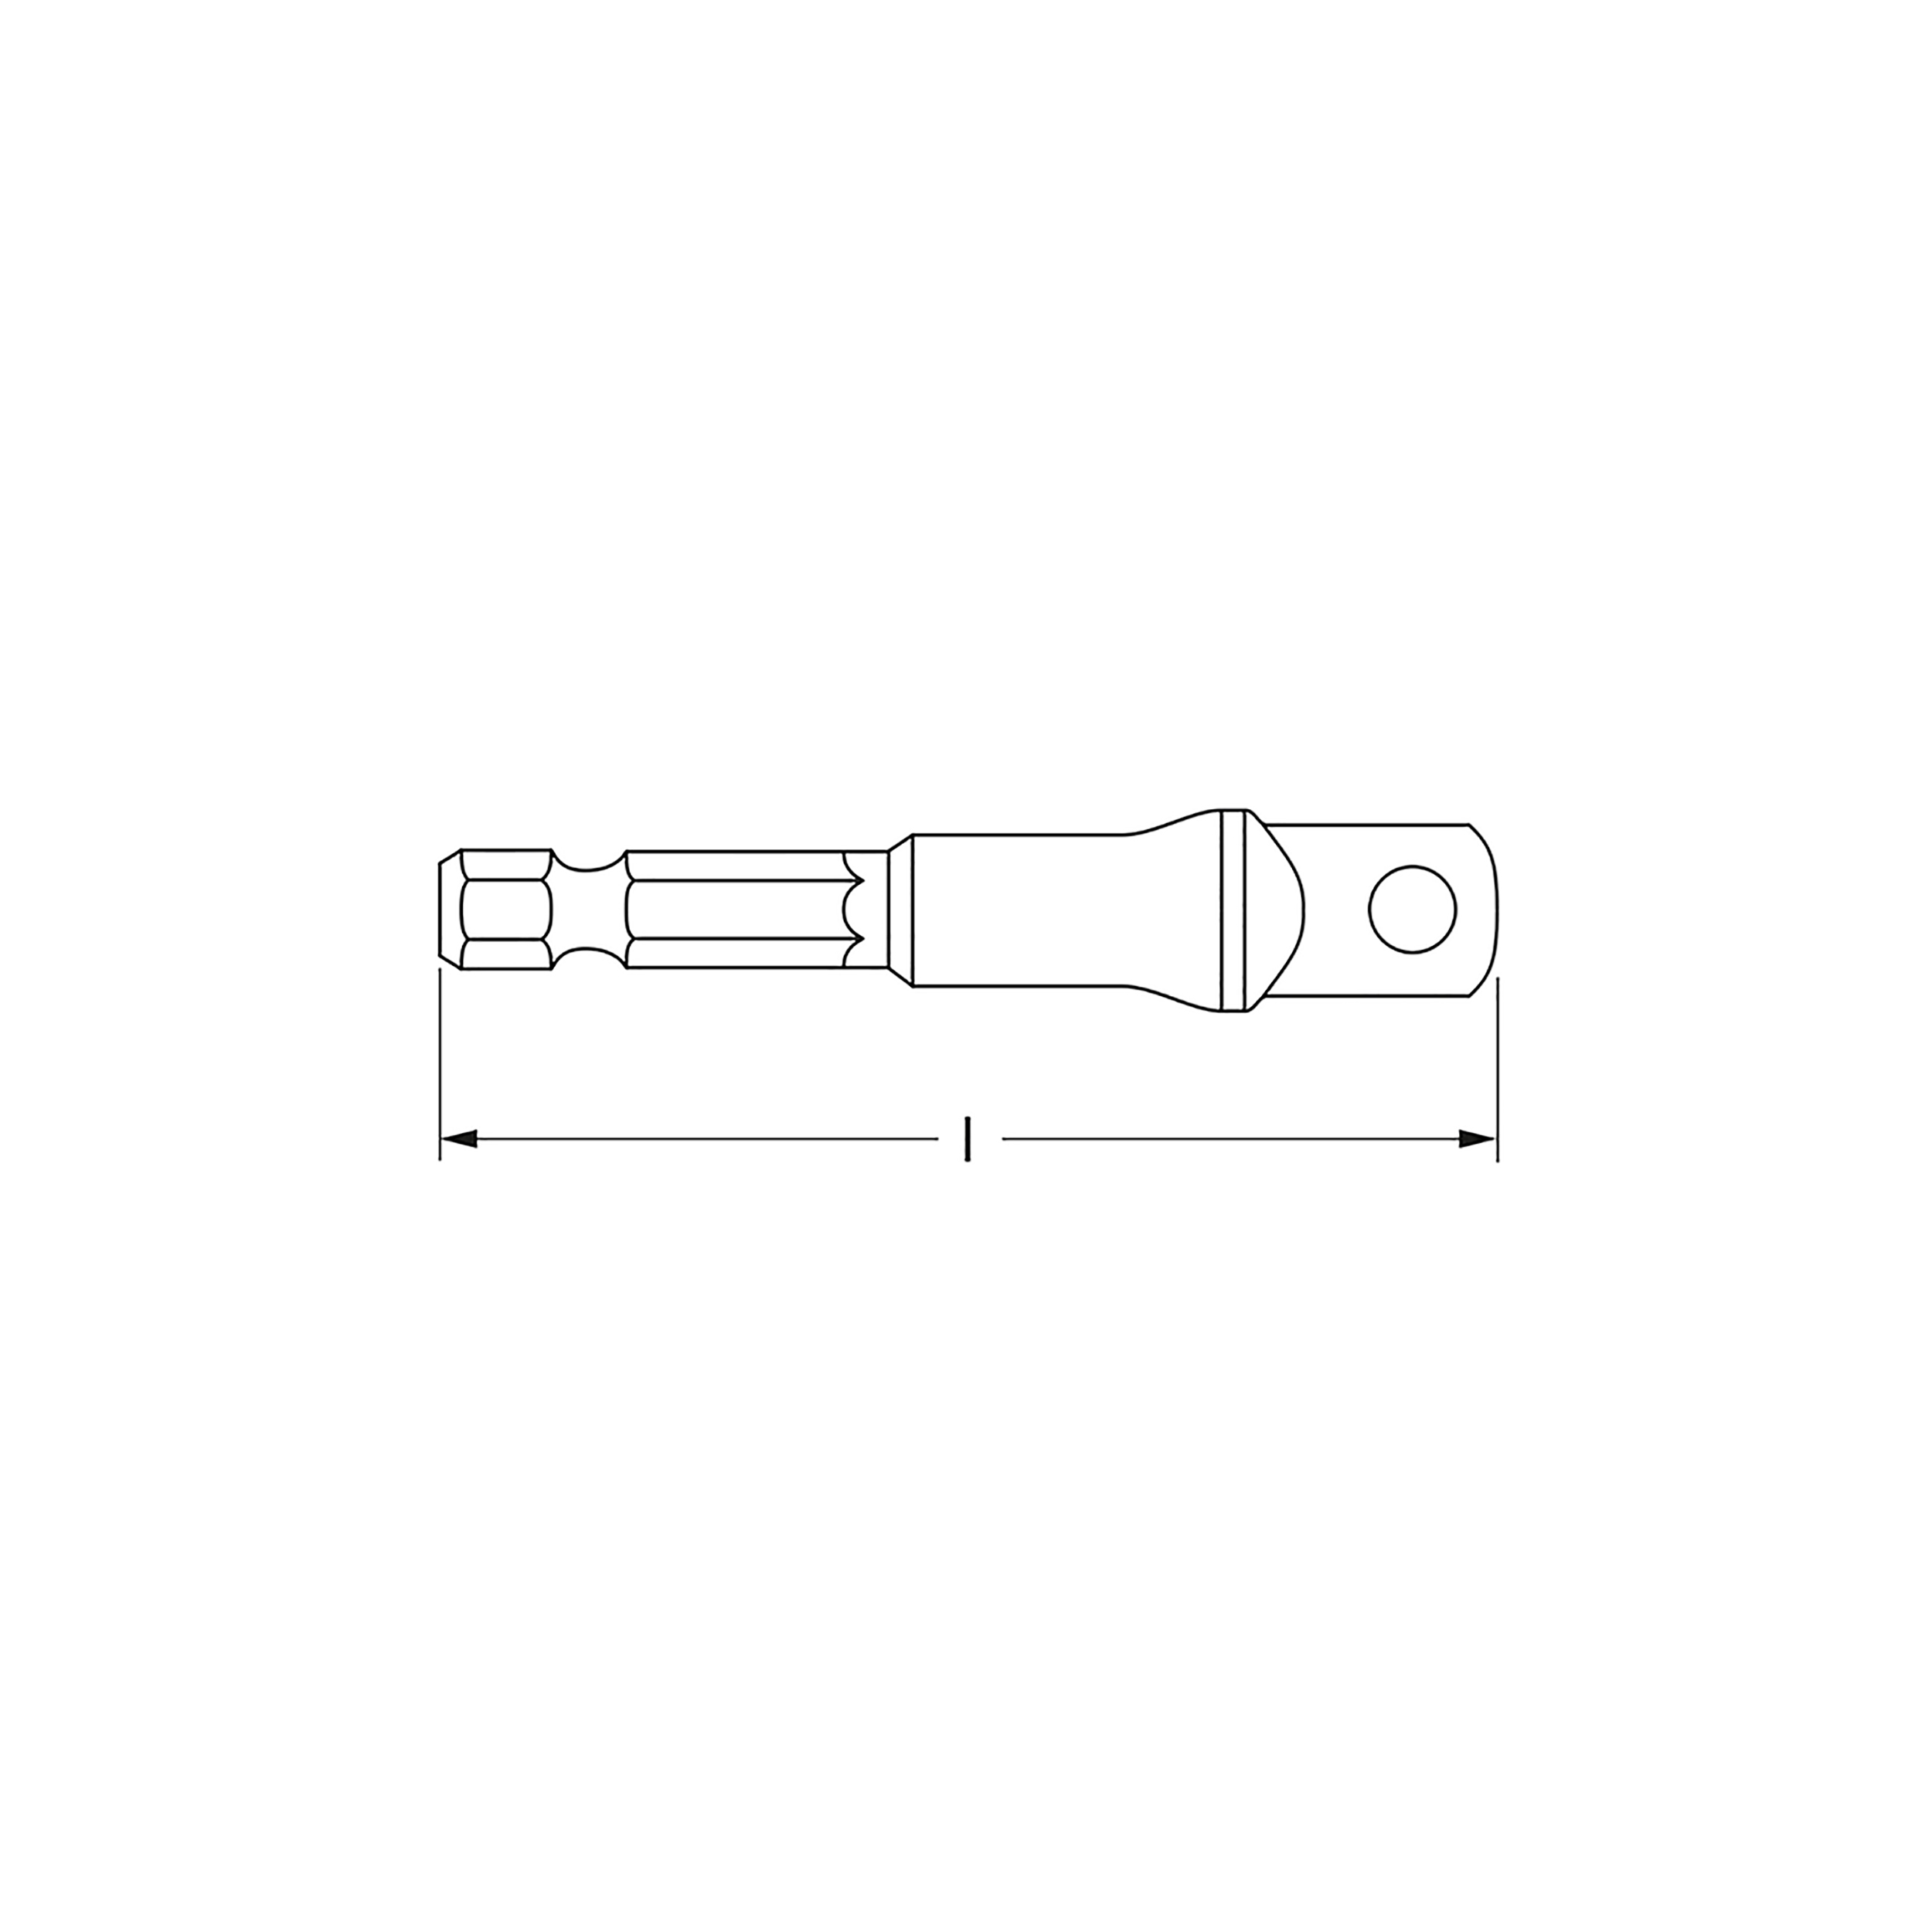 Adapter for drill, M 3/8" x M 1/4", MATADOR item no.: 30850001